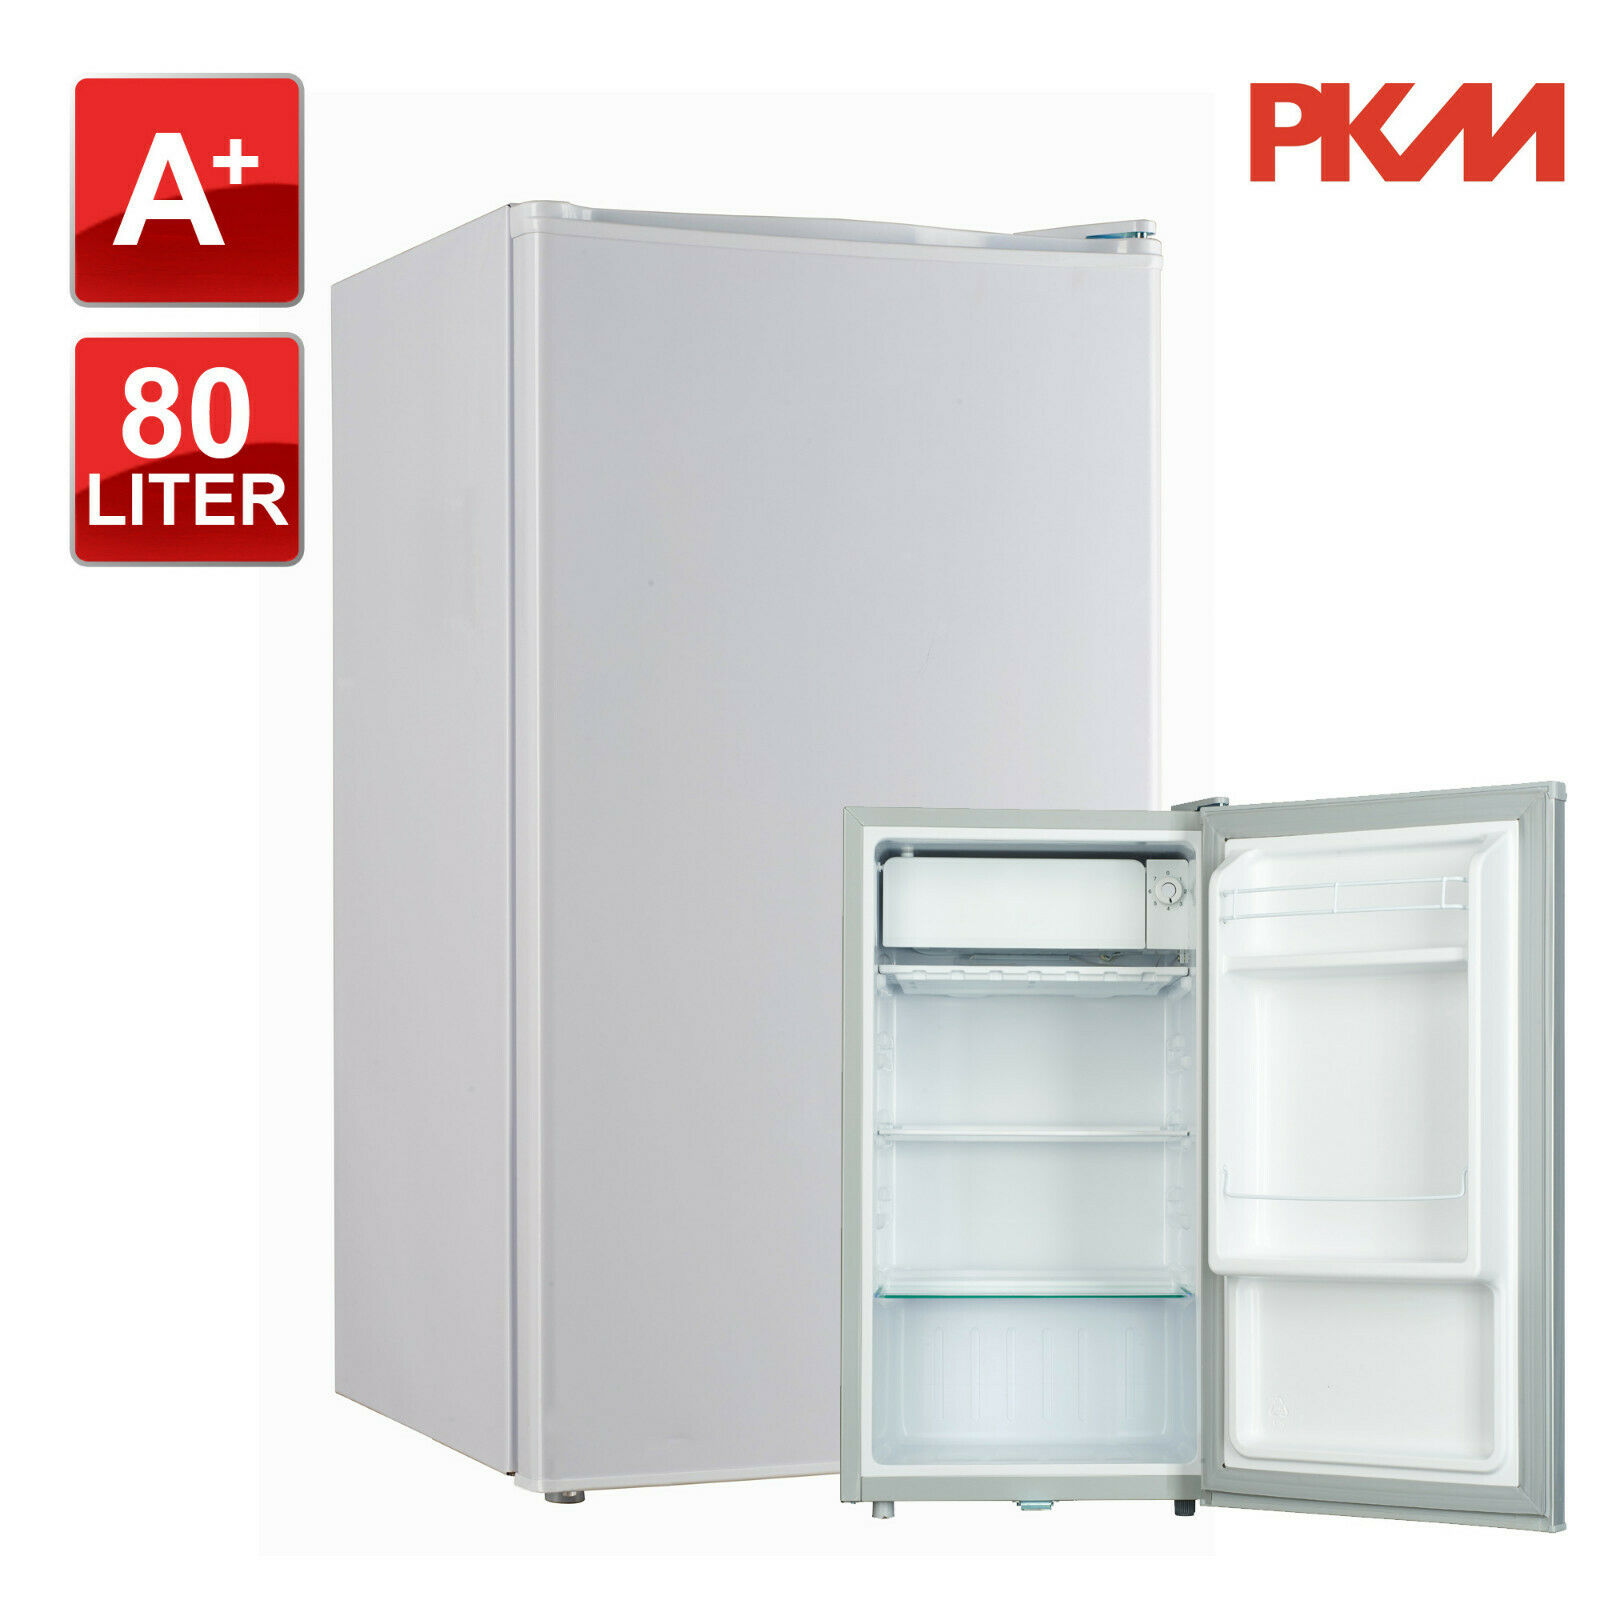 Bild zu Stand Tischkühlschrank Kühlschrank PKM KS81.0 für 111,11€ (Vergleich: 124,95€)